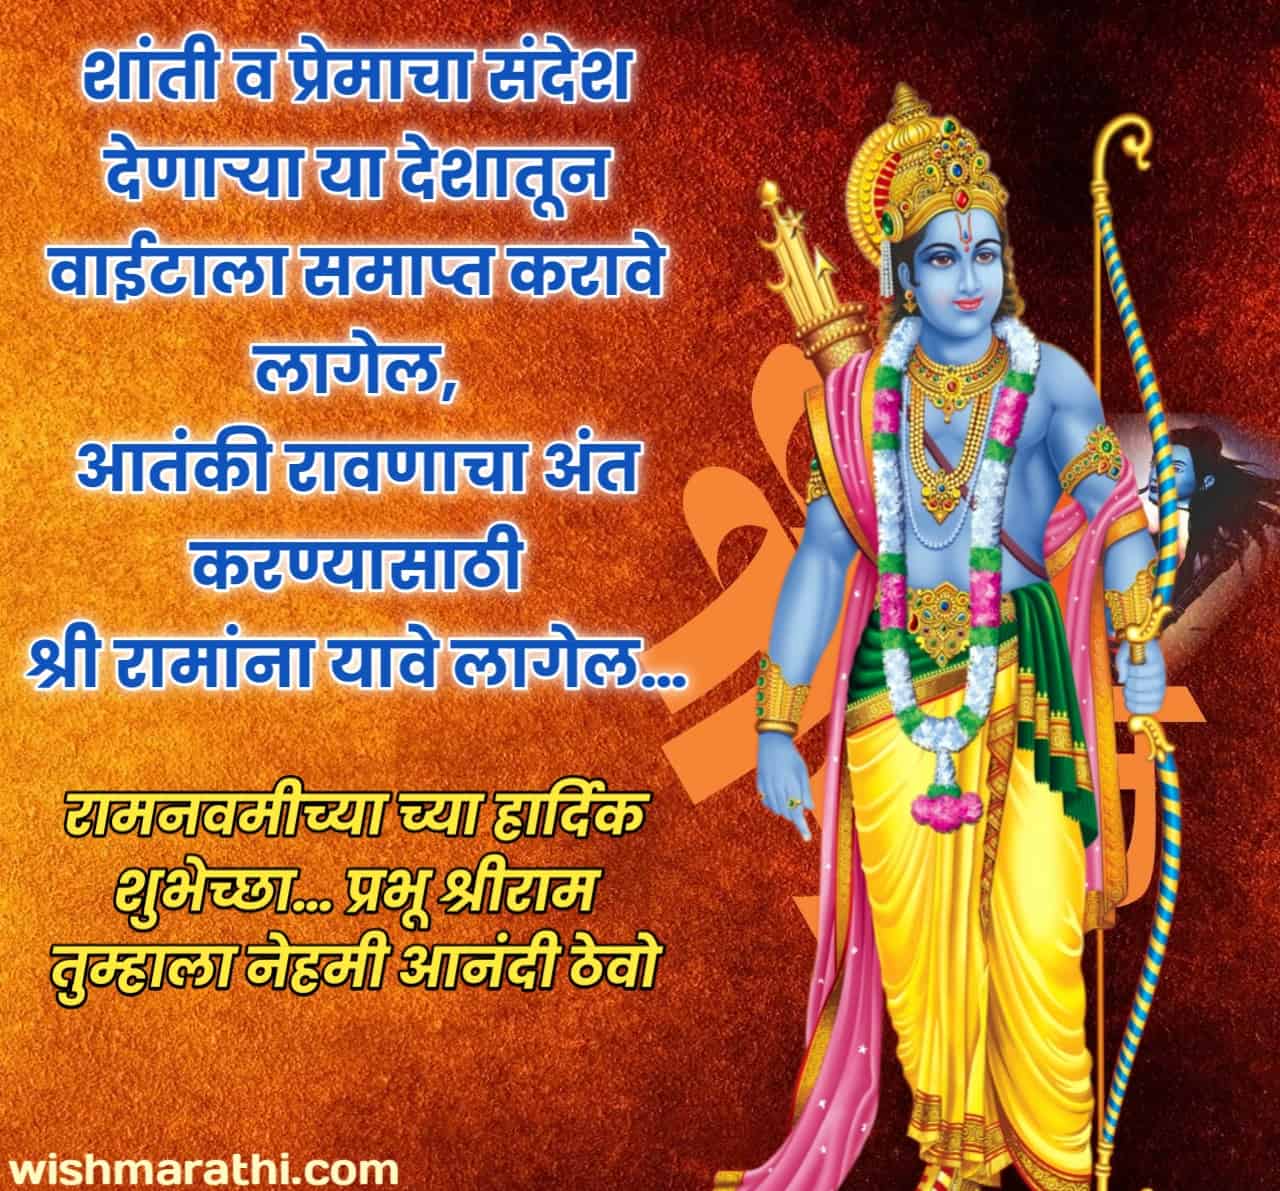 ram navami wishes in marathi